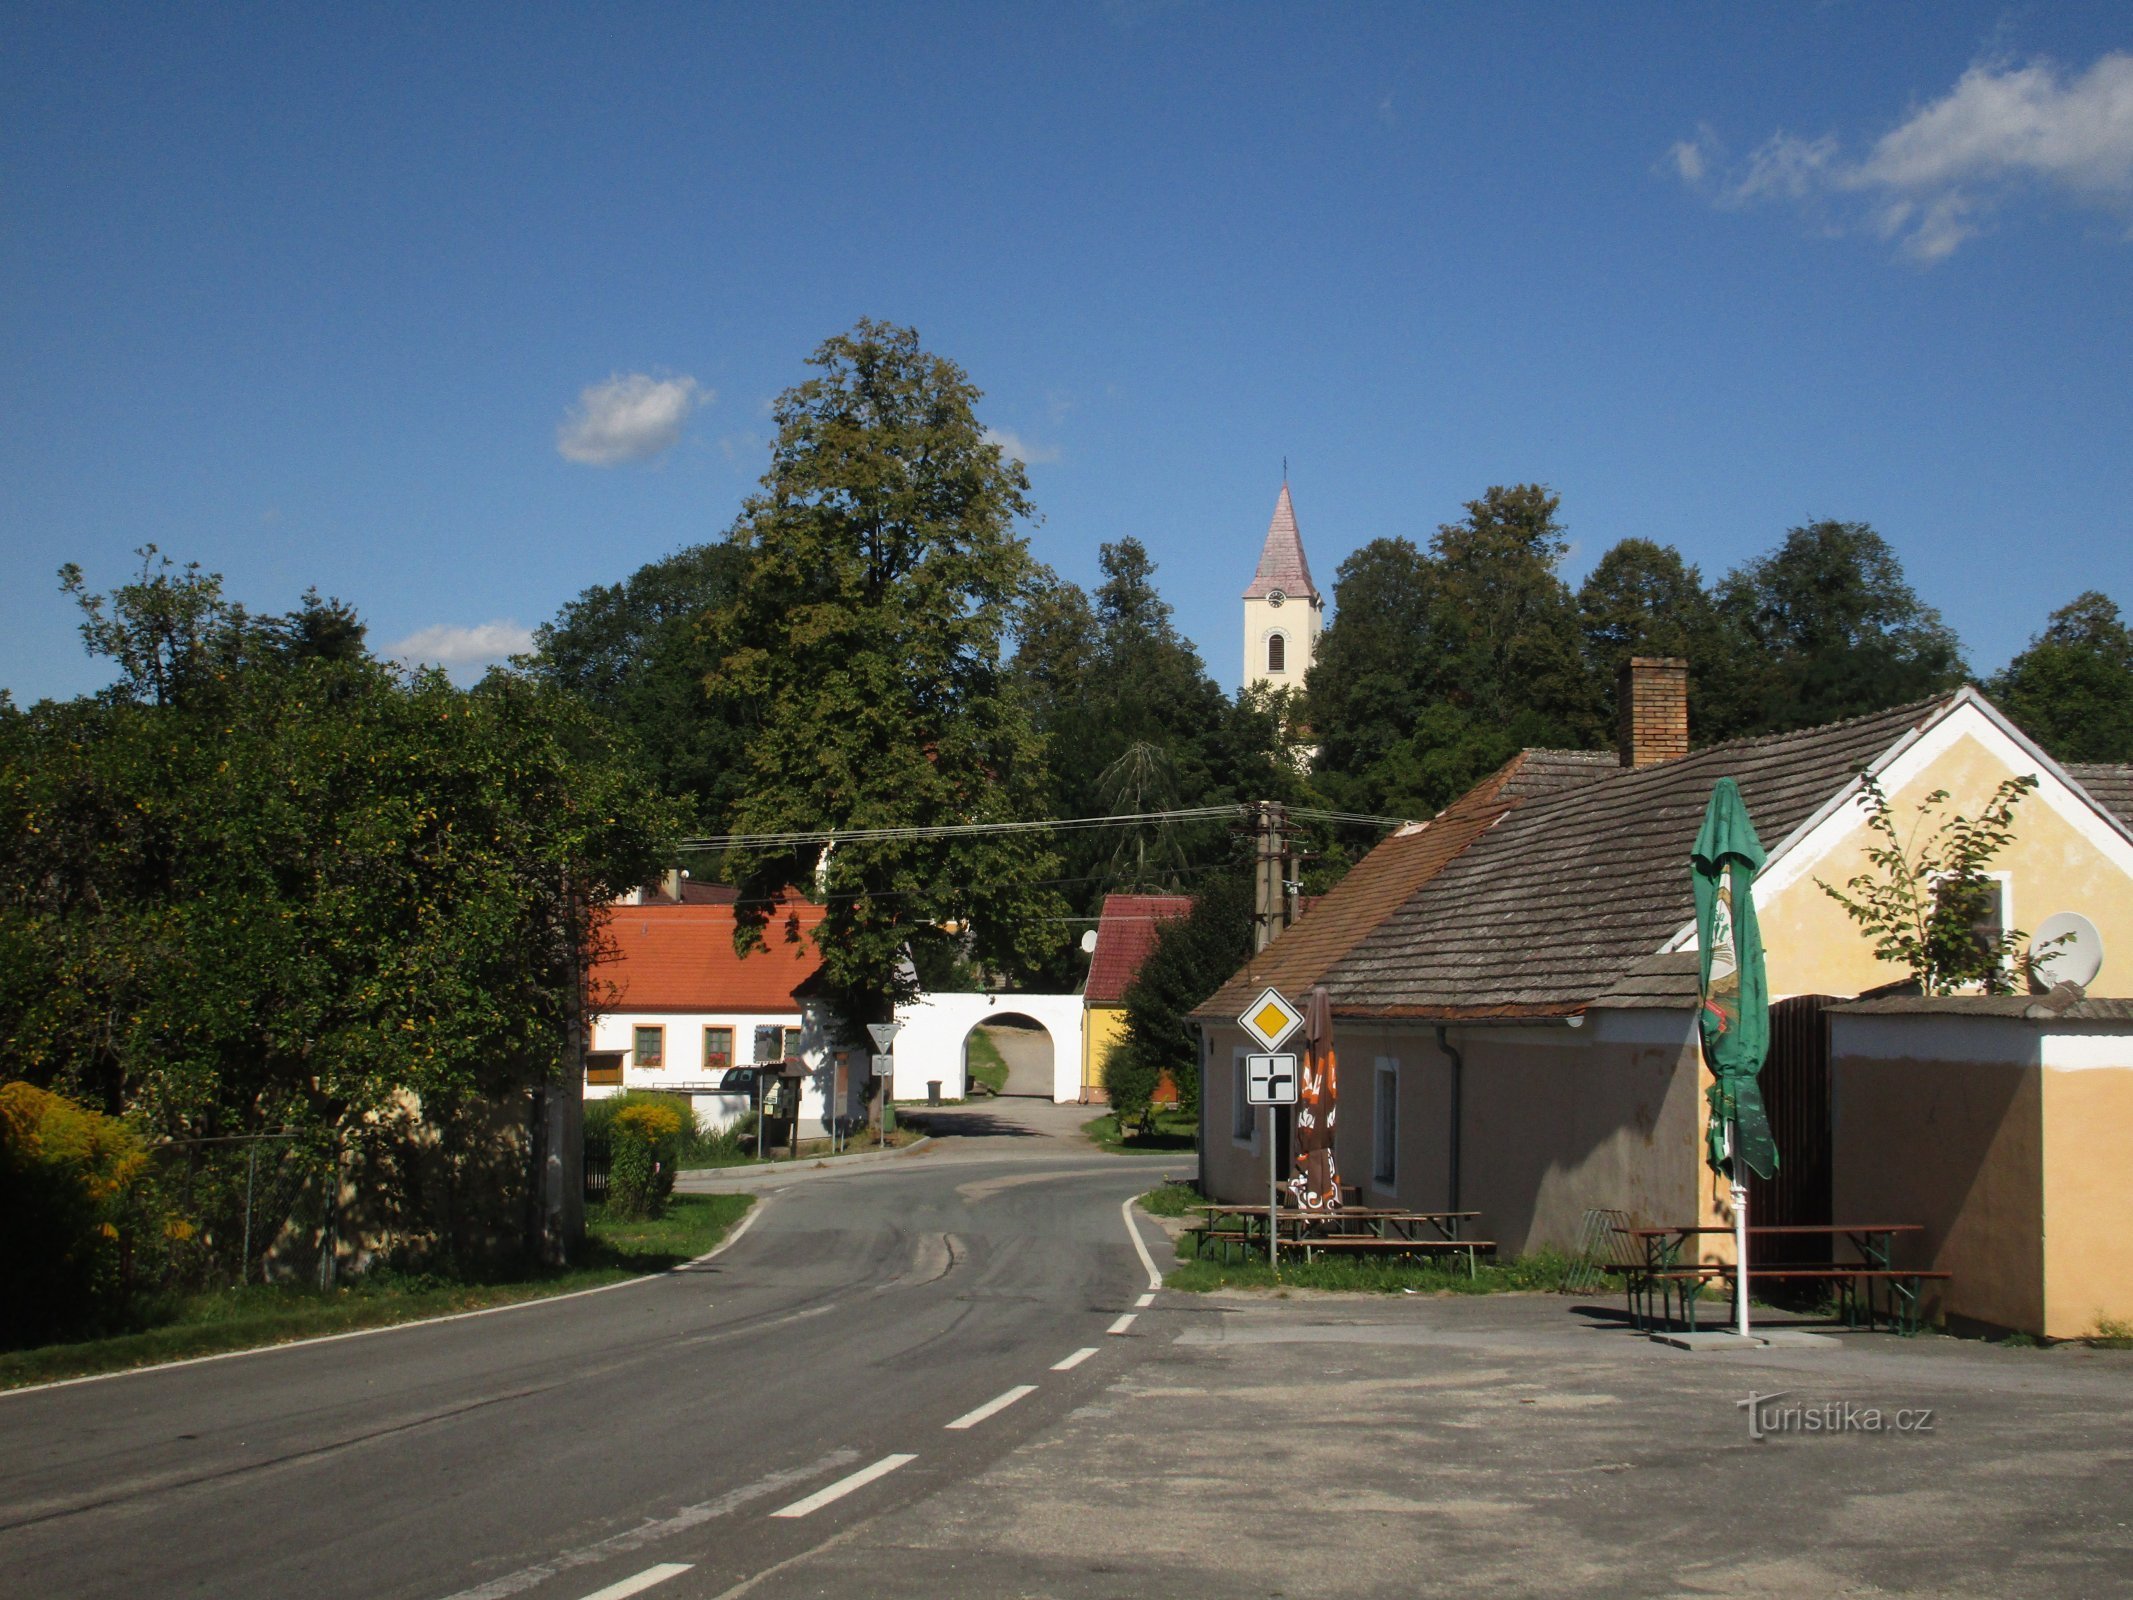 vista da aldeia da estrada 153 vindo de Chlum u Třeboň